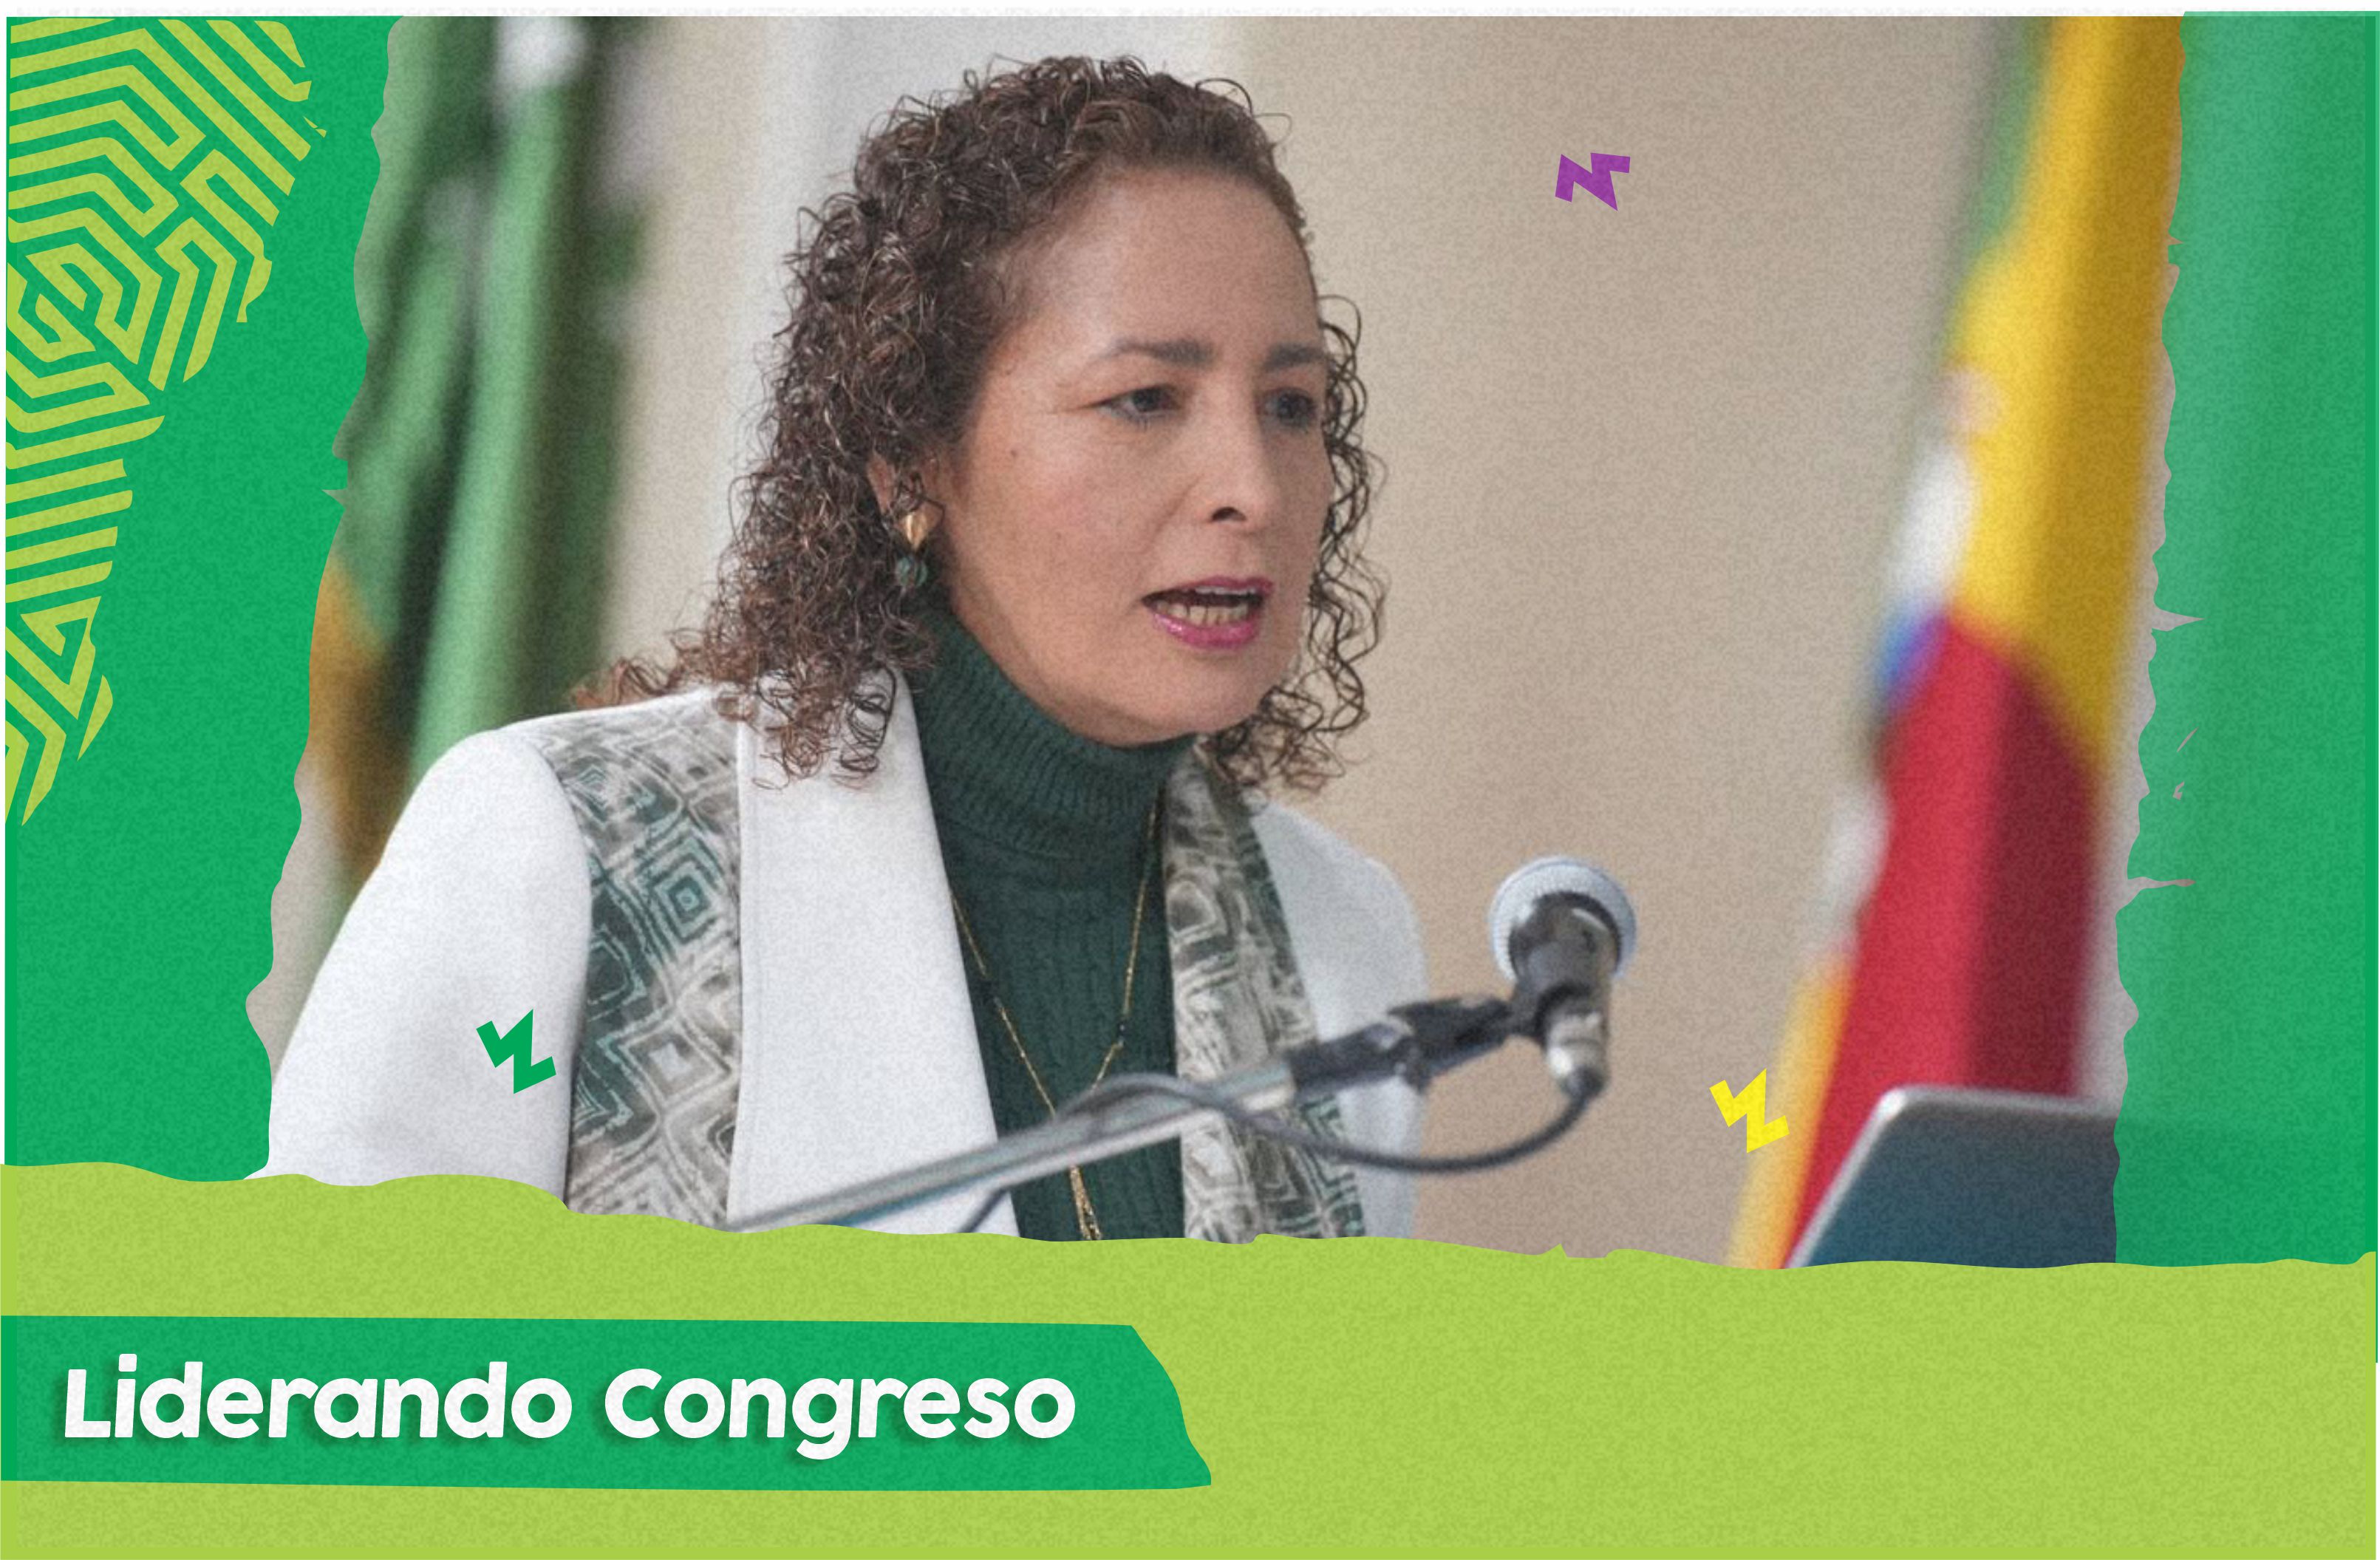 Acto legislativo de la representante Olga Lucía exige nuevos requisitos para ser ministro, senador y representante